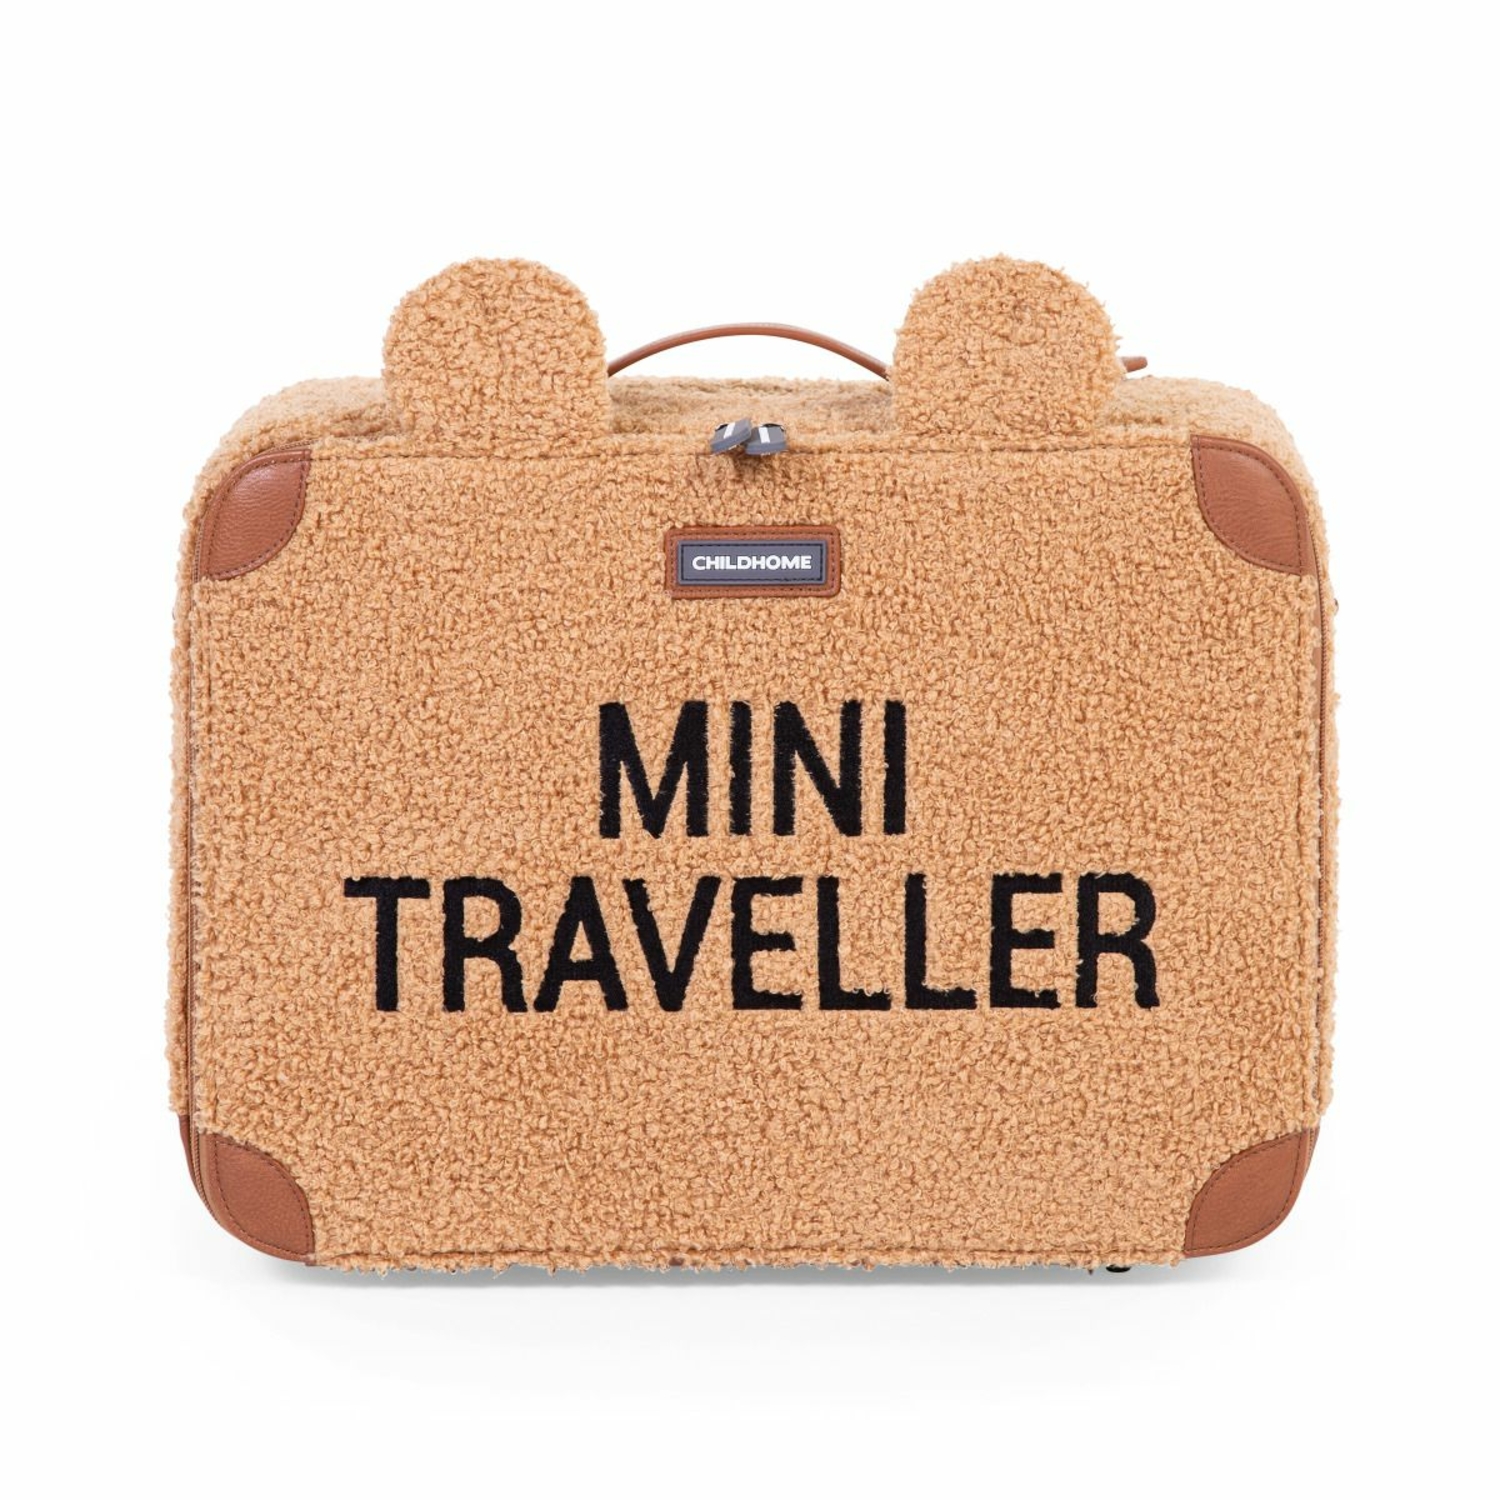 Valise Mini Traveller Teddy Childhome